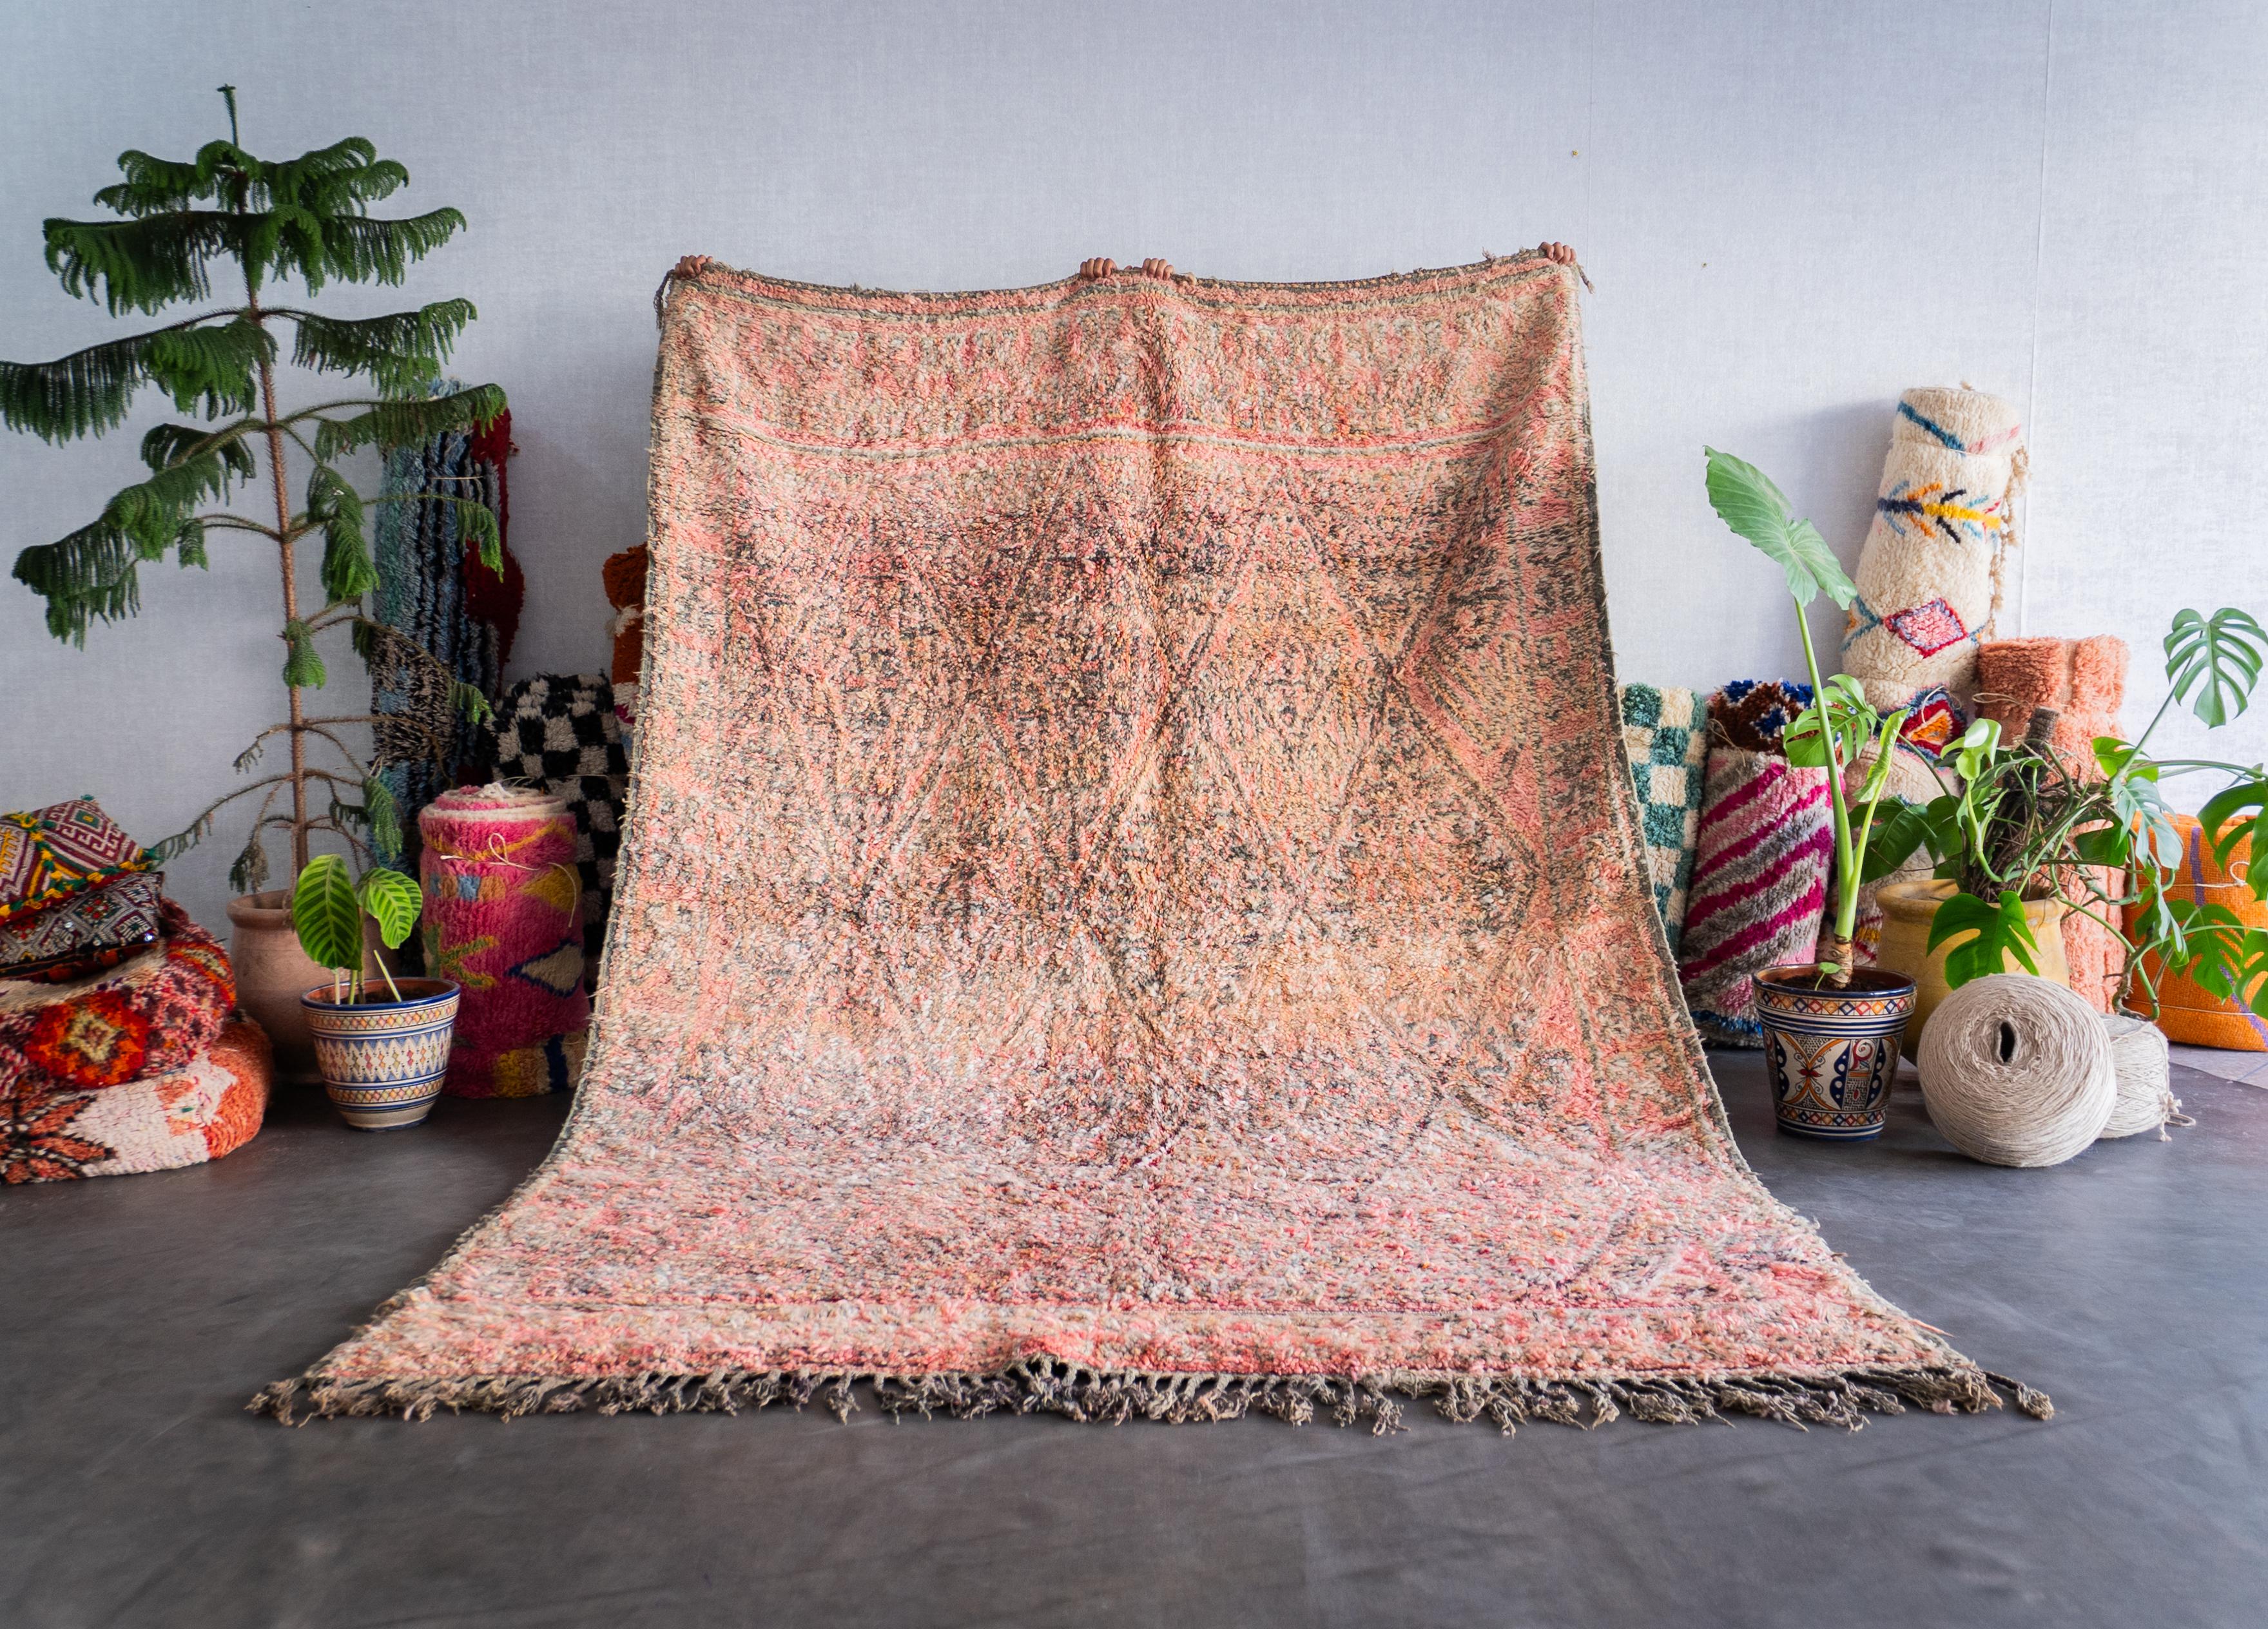 Entdecken Sie das reiche Erbe, das in unseren marokkanischen Vintage-Teppich eingewoben ist. Jeder Berberteppich wird von erfahrenen Kunsthandwerkern mit bewährten Techniken handgefertigt und ist ein einzigartiges Zeugnis der marokkanischen Kultur.